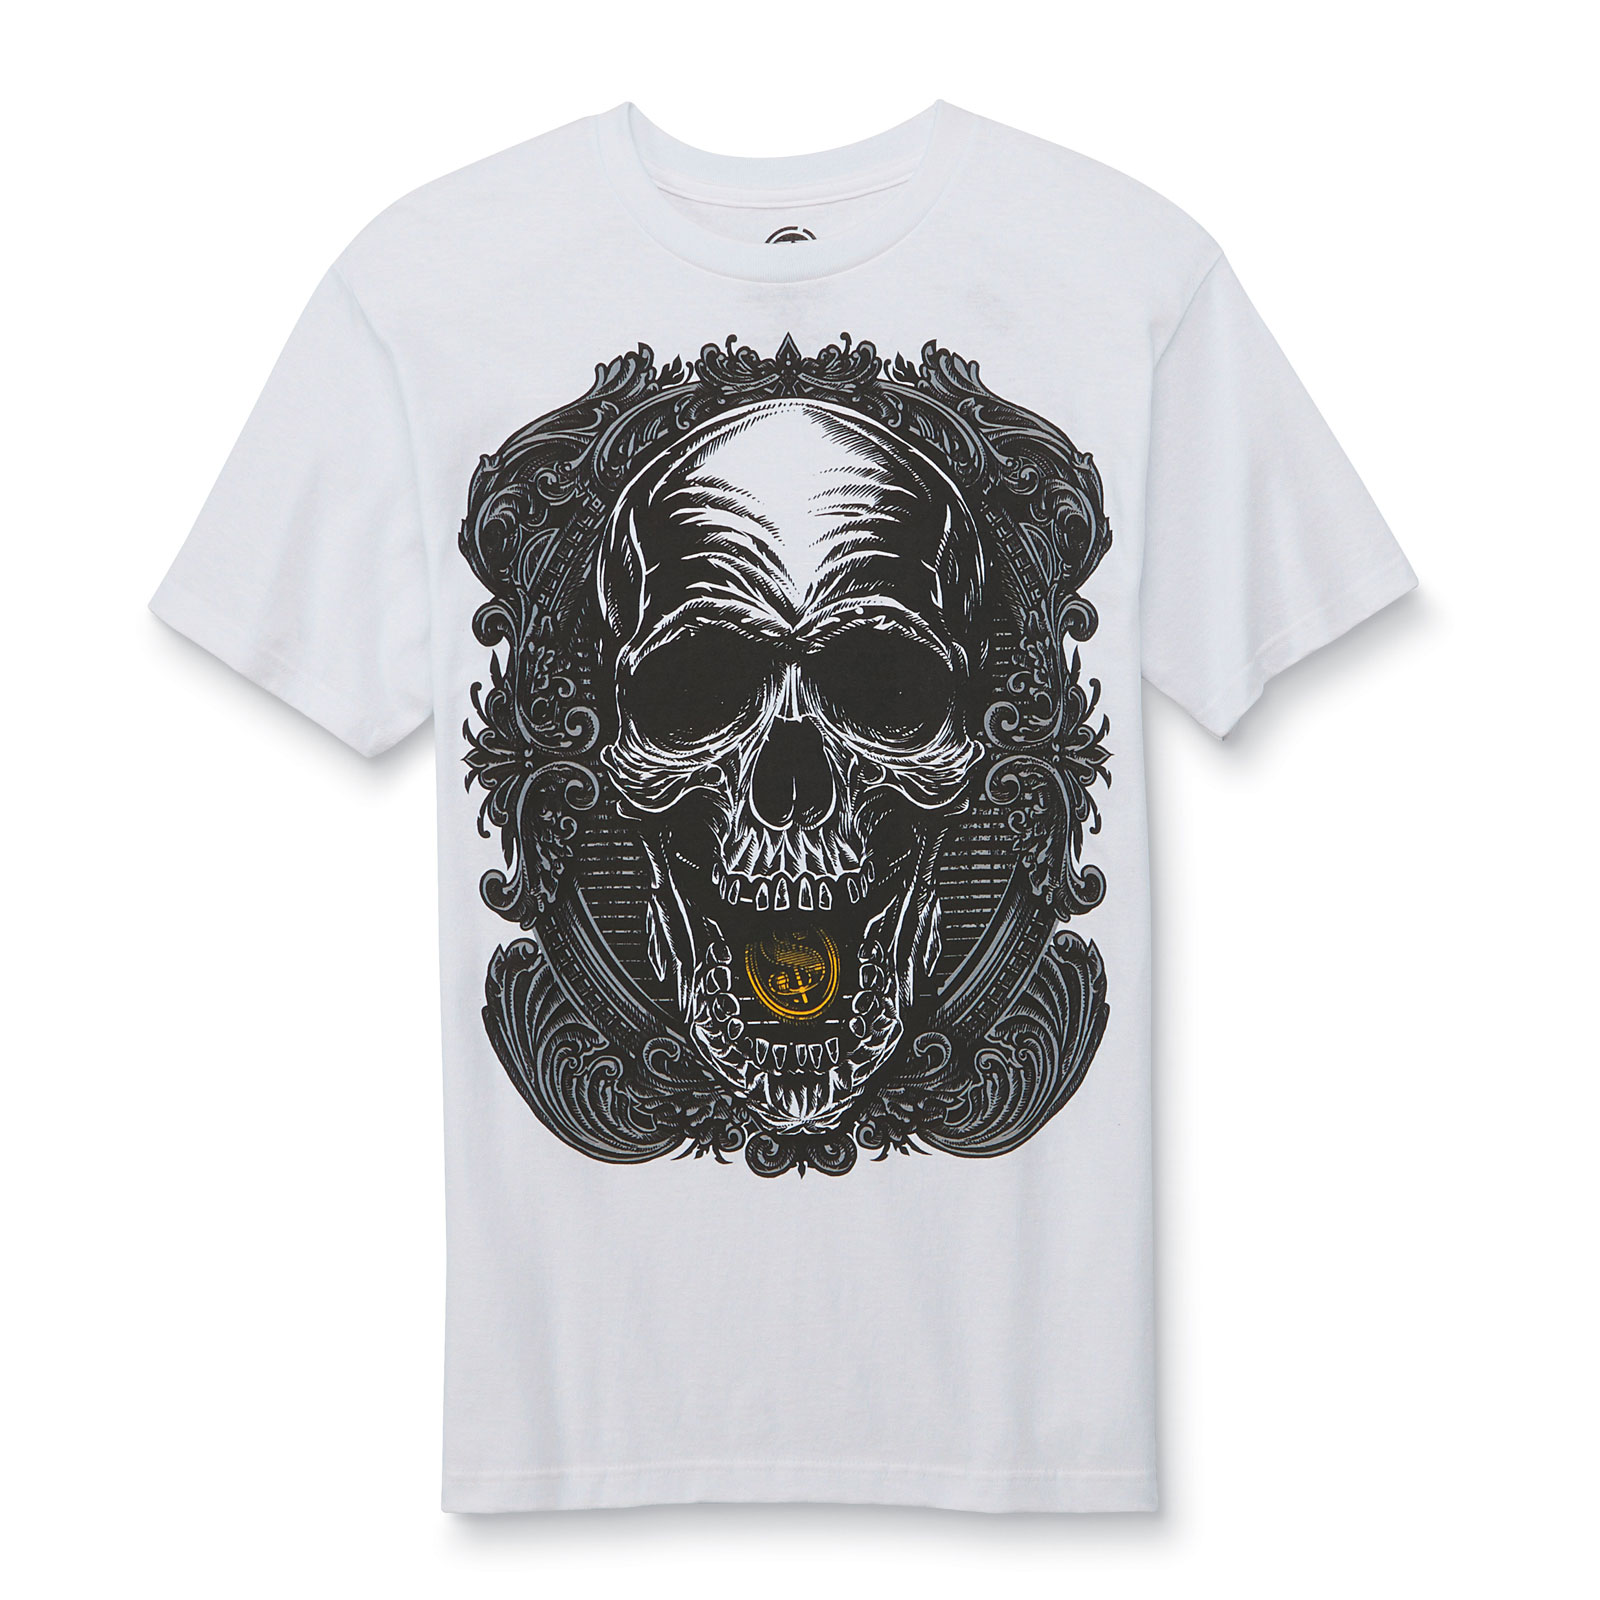 Men's Skull Graphic T-shirt